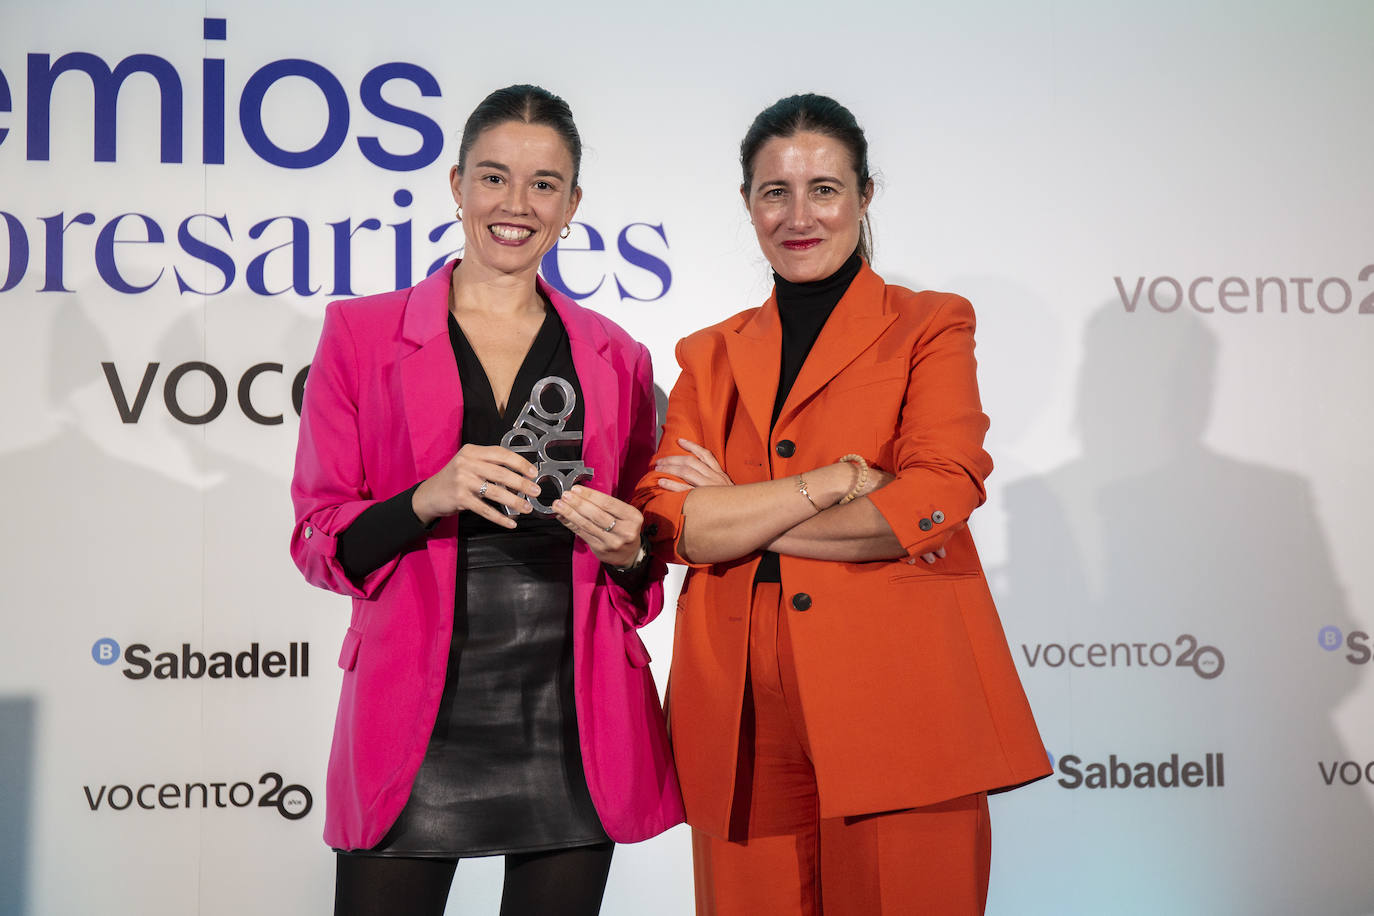 Samary Fernández, directora general del Área de Lujo, Estilo deVida y Revistas de Vocento, entrega el premio a la Digitalización a Verónica de Iscar, CB2B0 de Civitatis